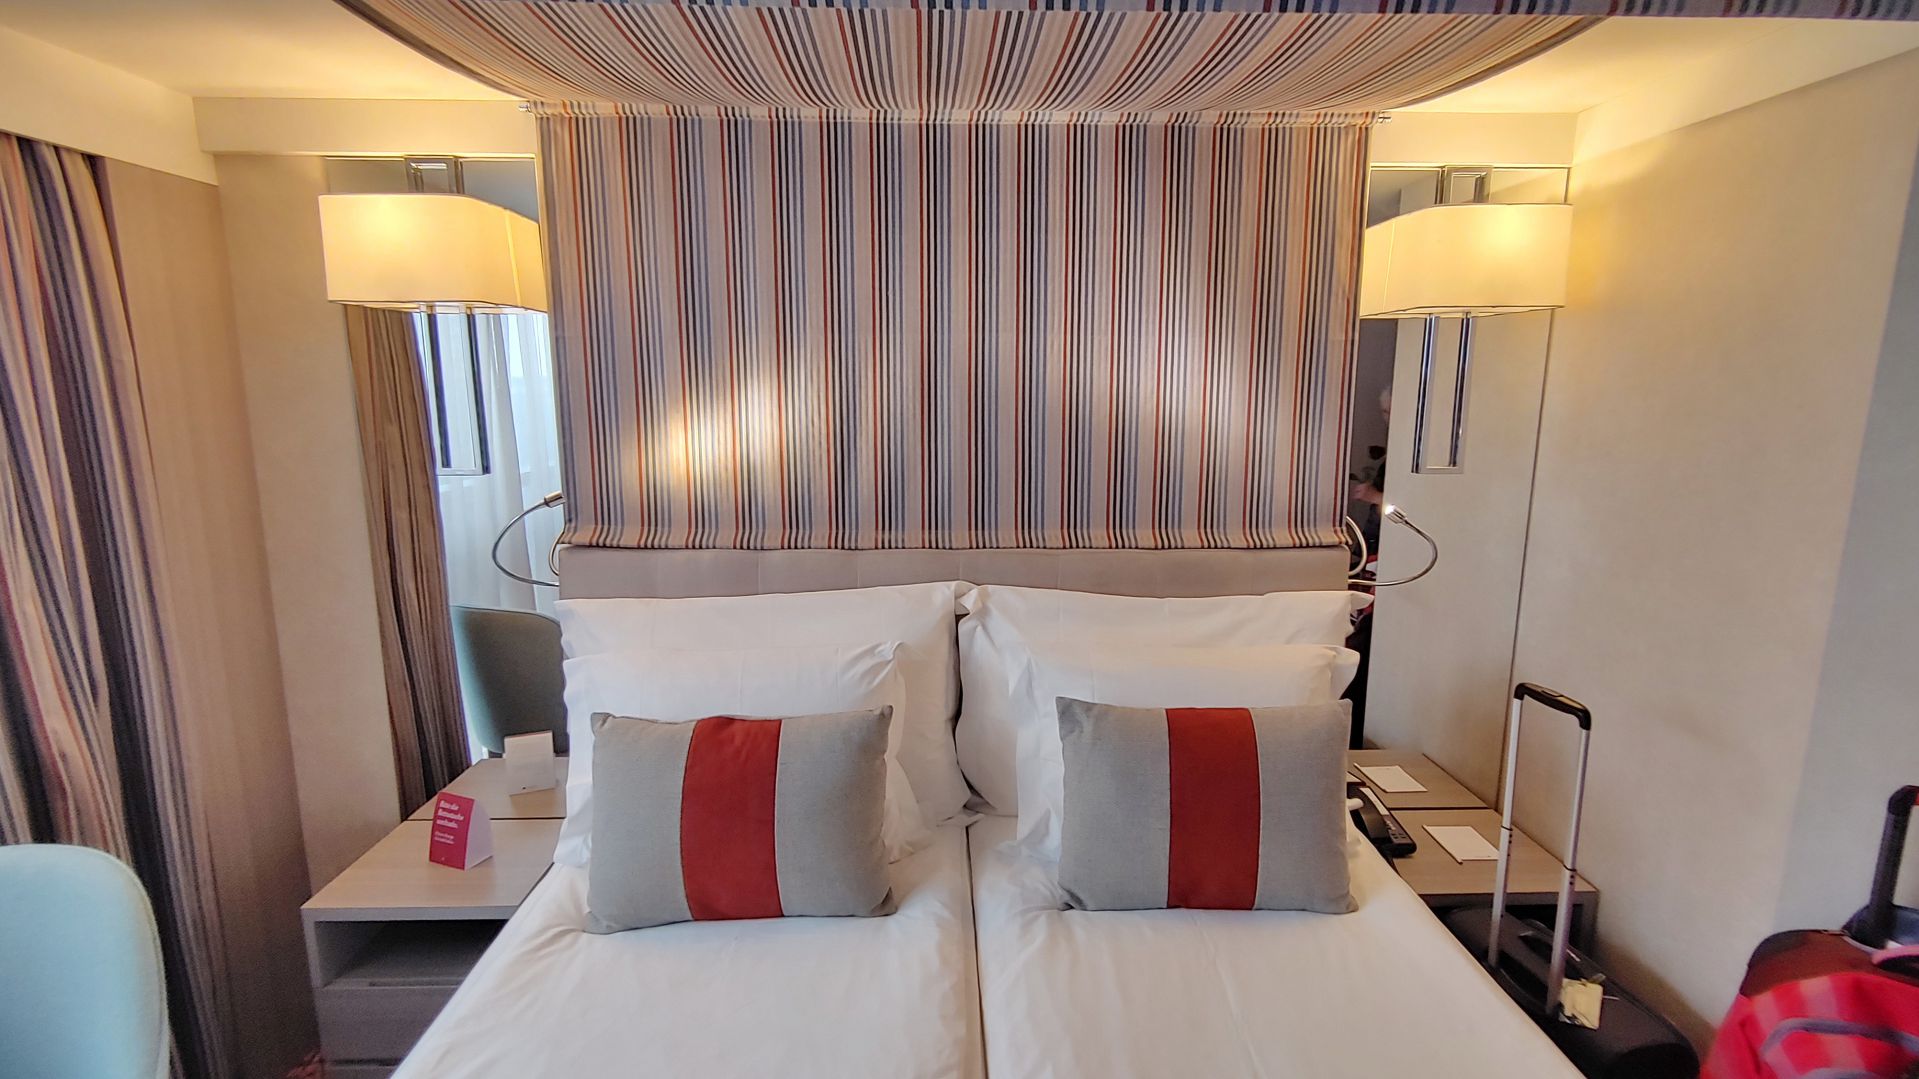 PORTO - die beiden Betten sind ausreichend breit, rechts und links stehen Nachttische und es gibt sogar an jedem Bett eine Leselampe